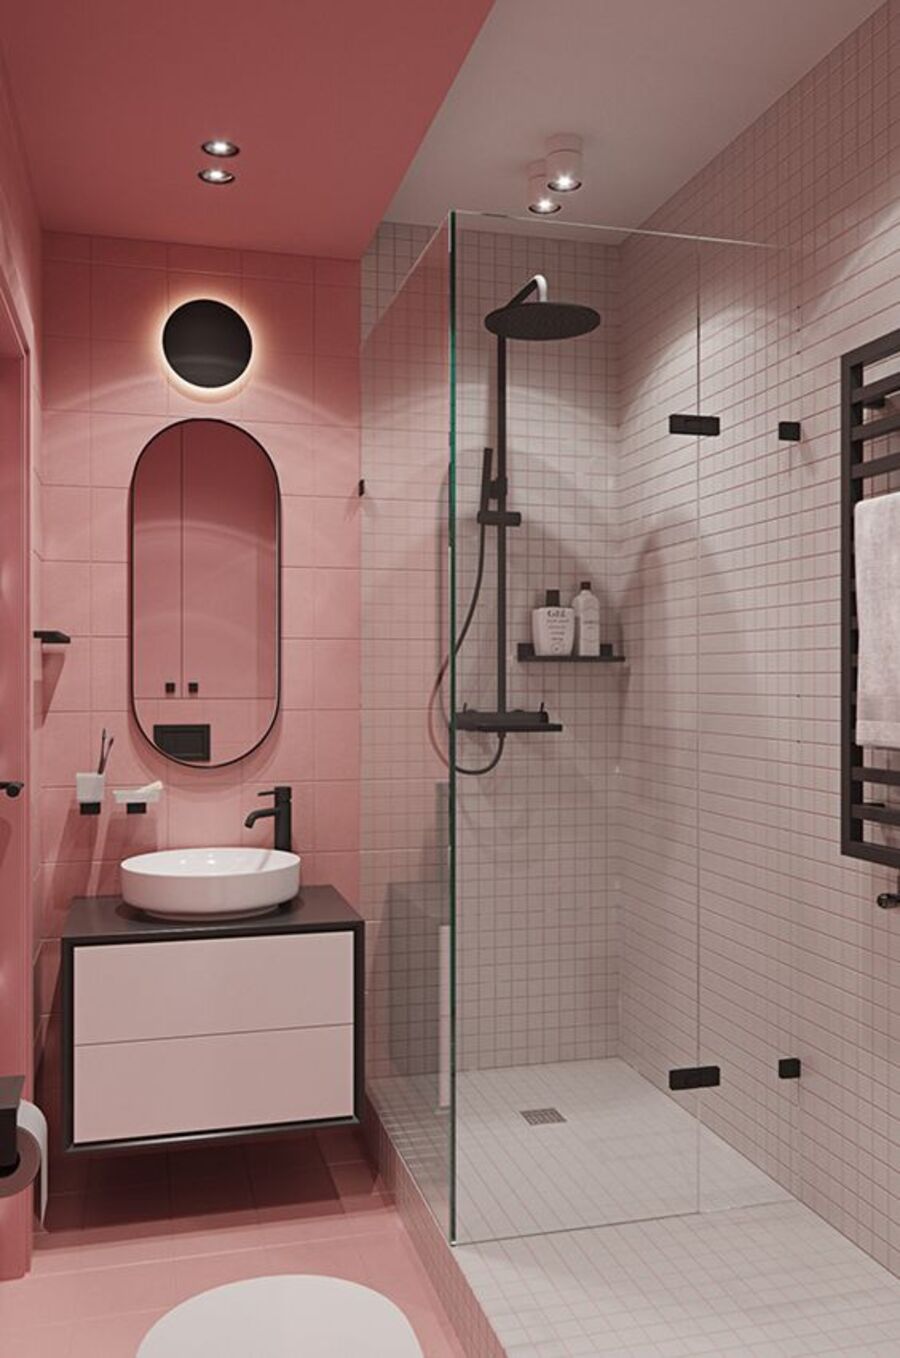 Baño con paredes y piso rosado. En la otra mitad del baño hay una ducha con azulejos blancos y grifería negra.